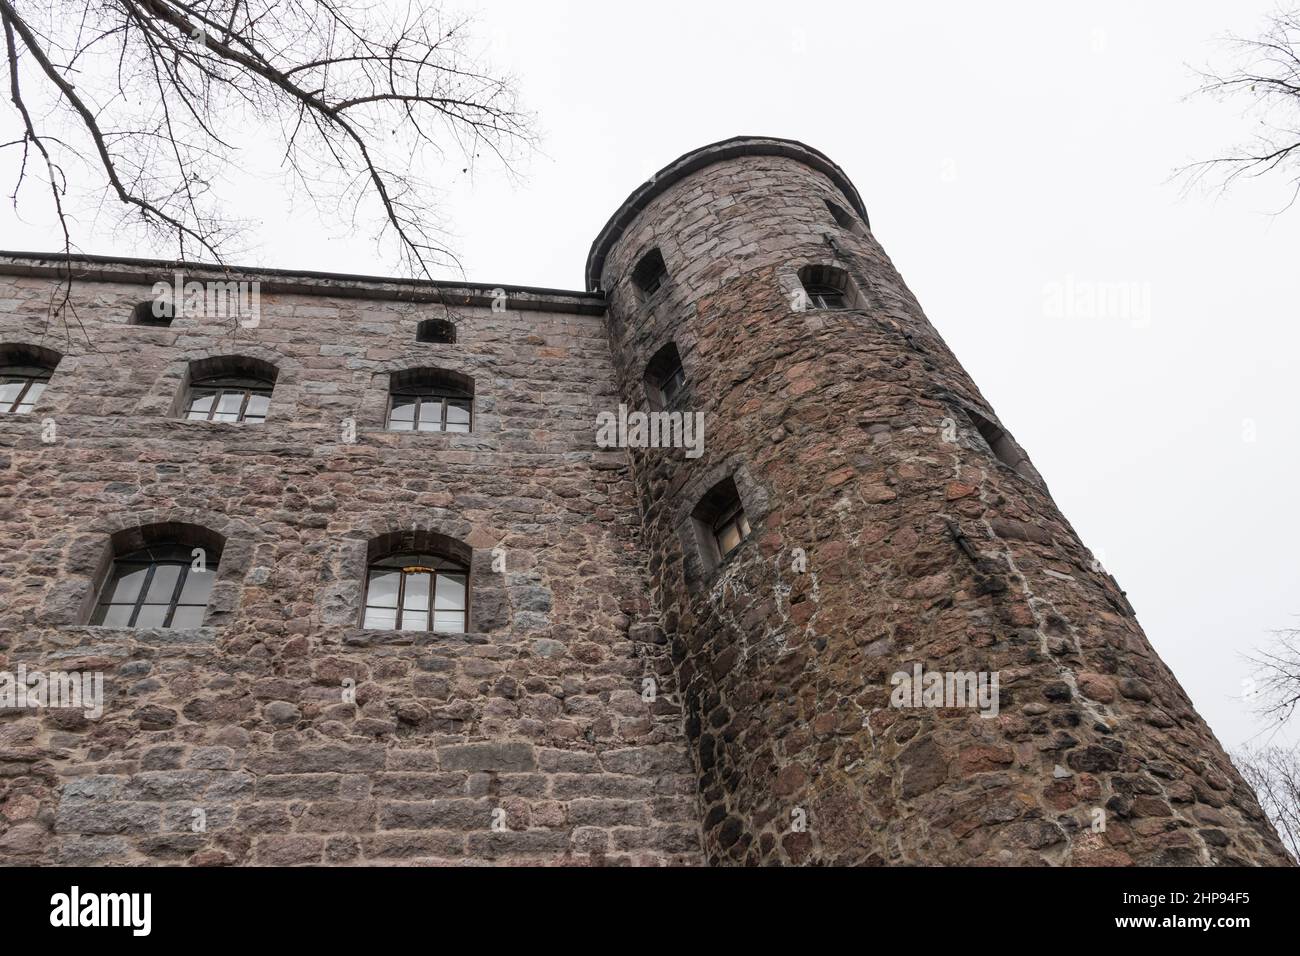 Fue la primera torre redonda de un muro defensivo construido en 1450s. Foto de stock